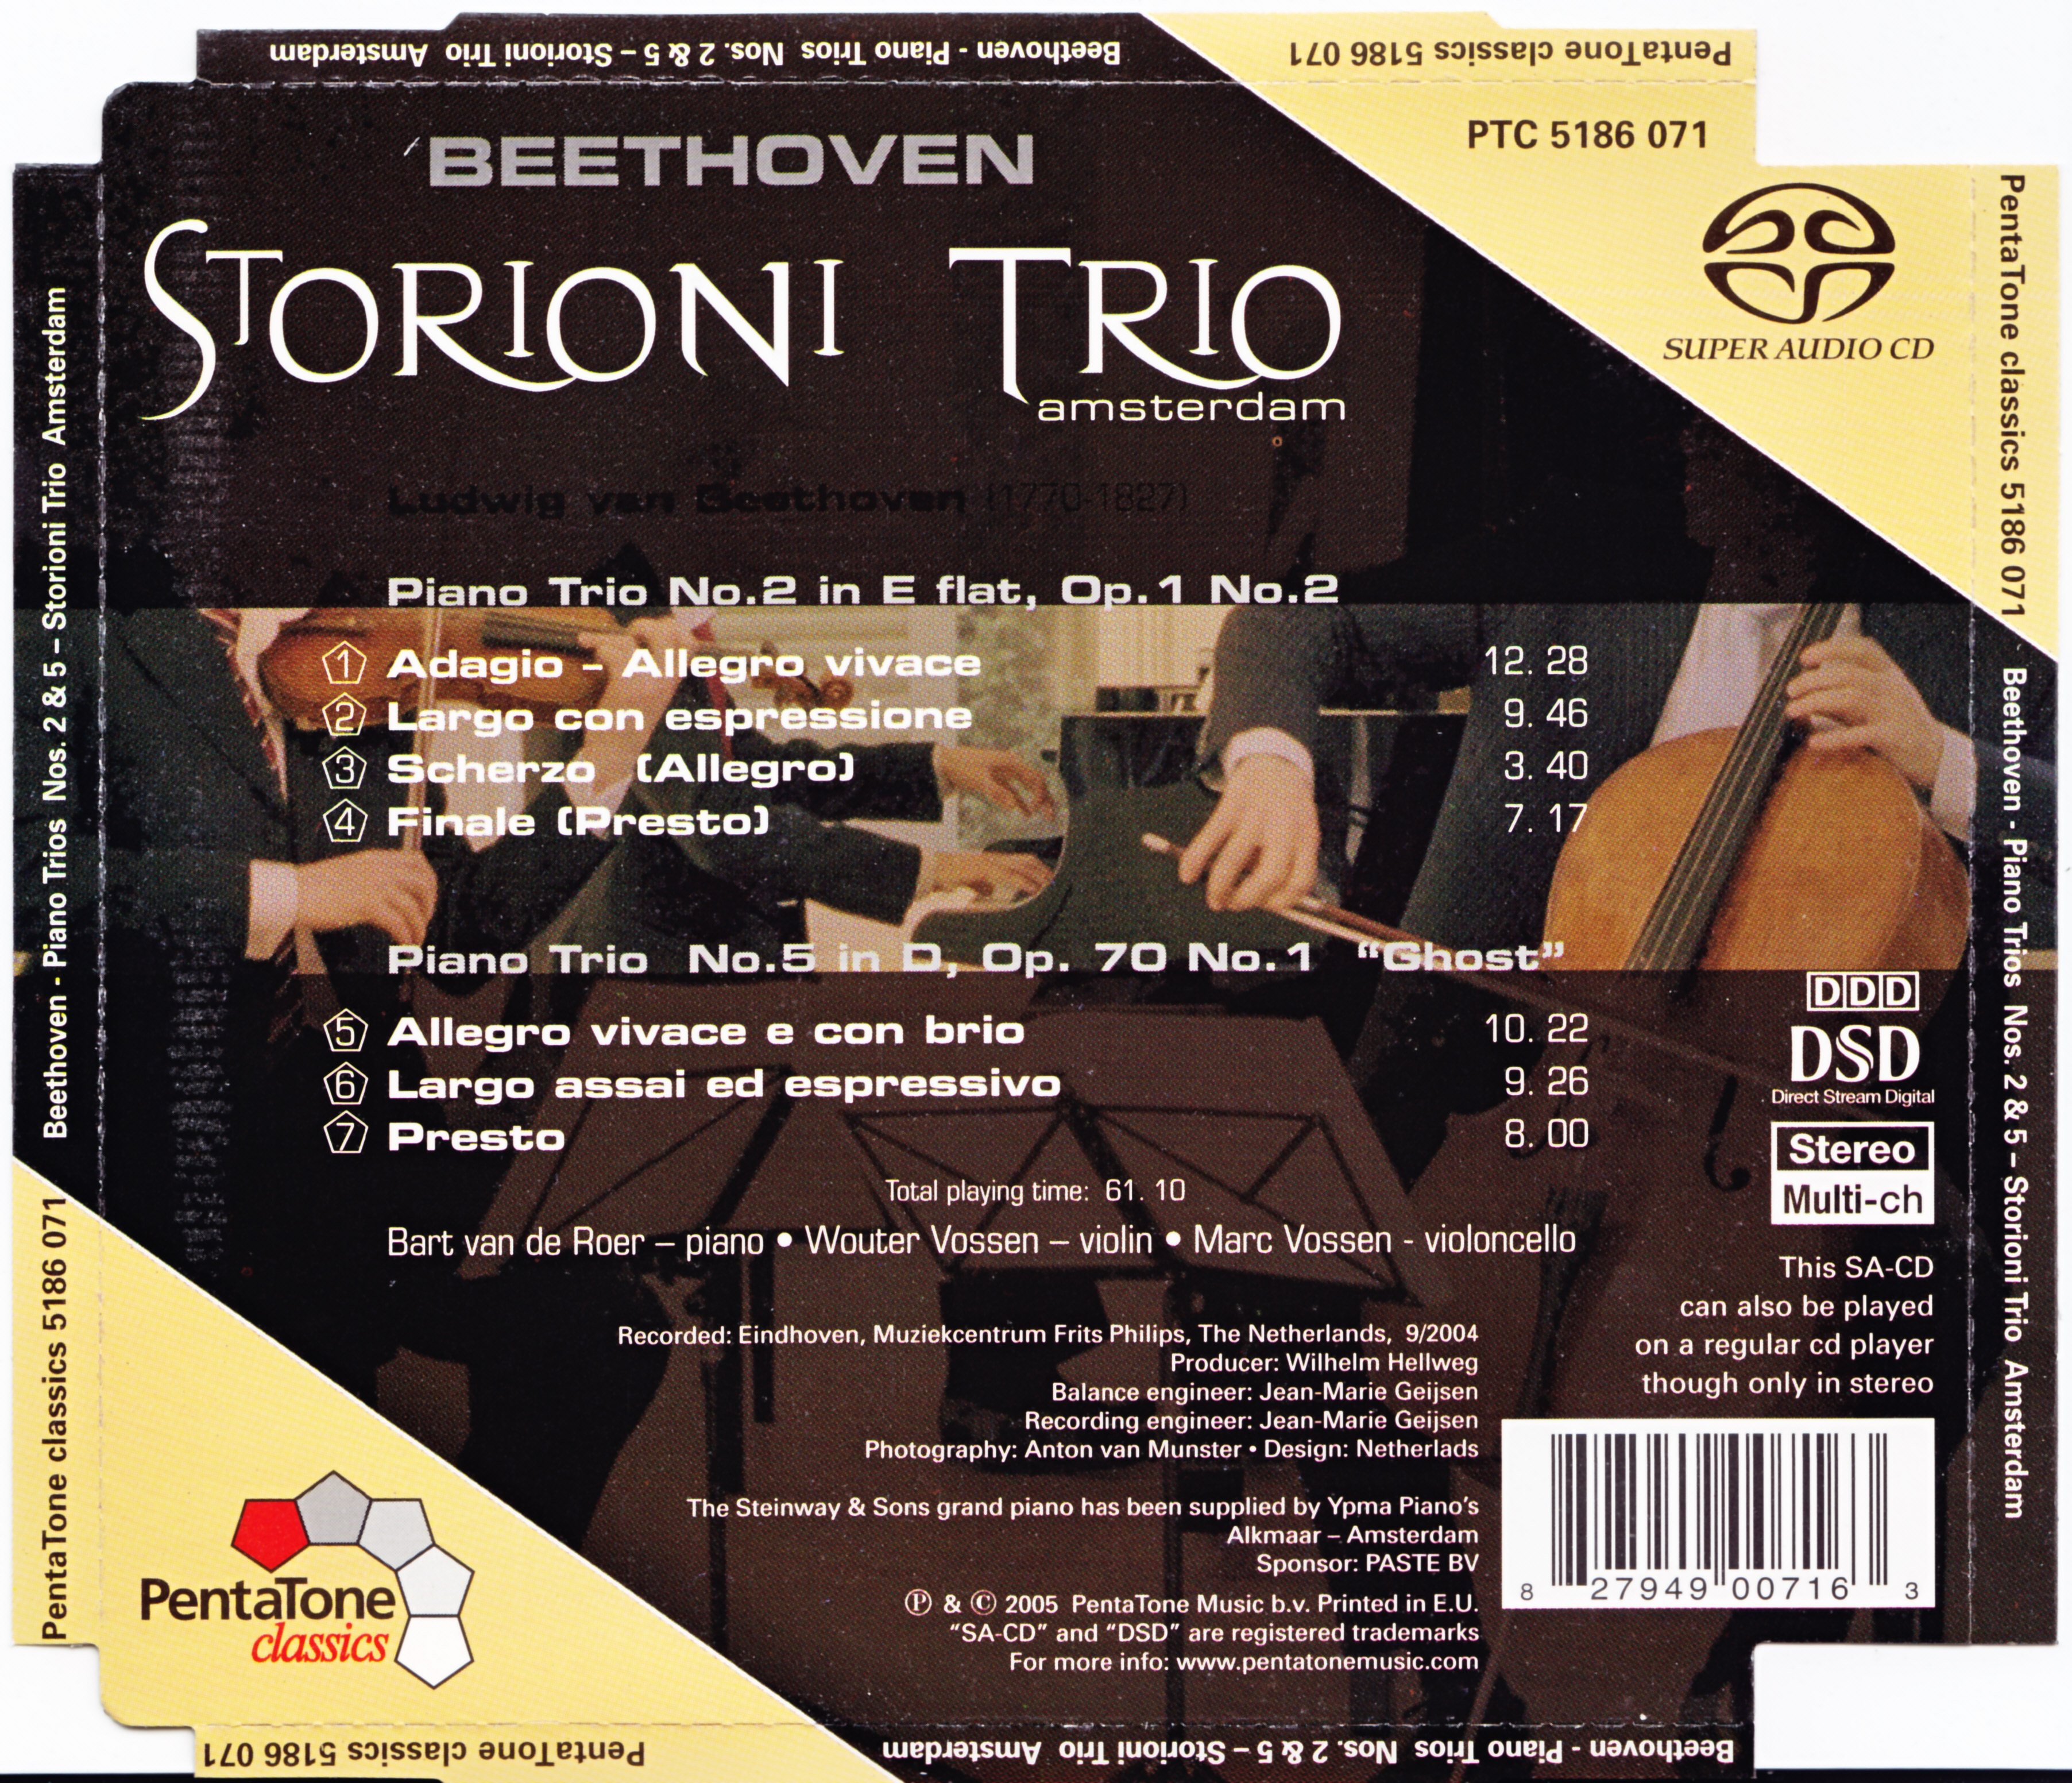 Storioni Trio - Beethoven Piano Trios 2 5 Ghost Trio 24-44.1